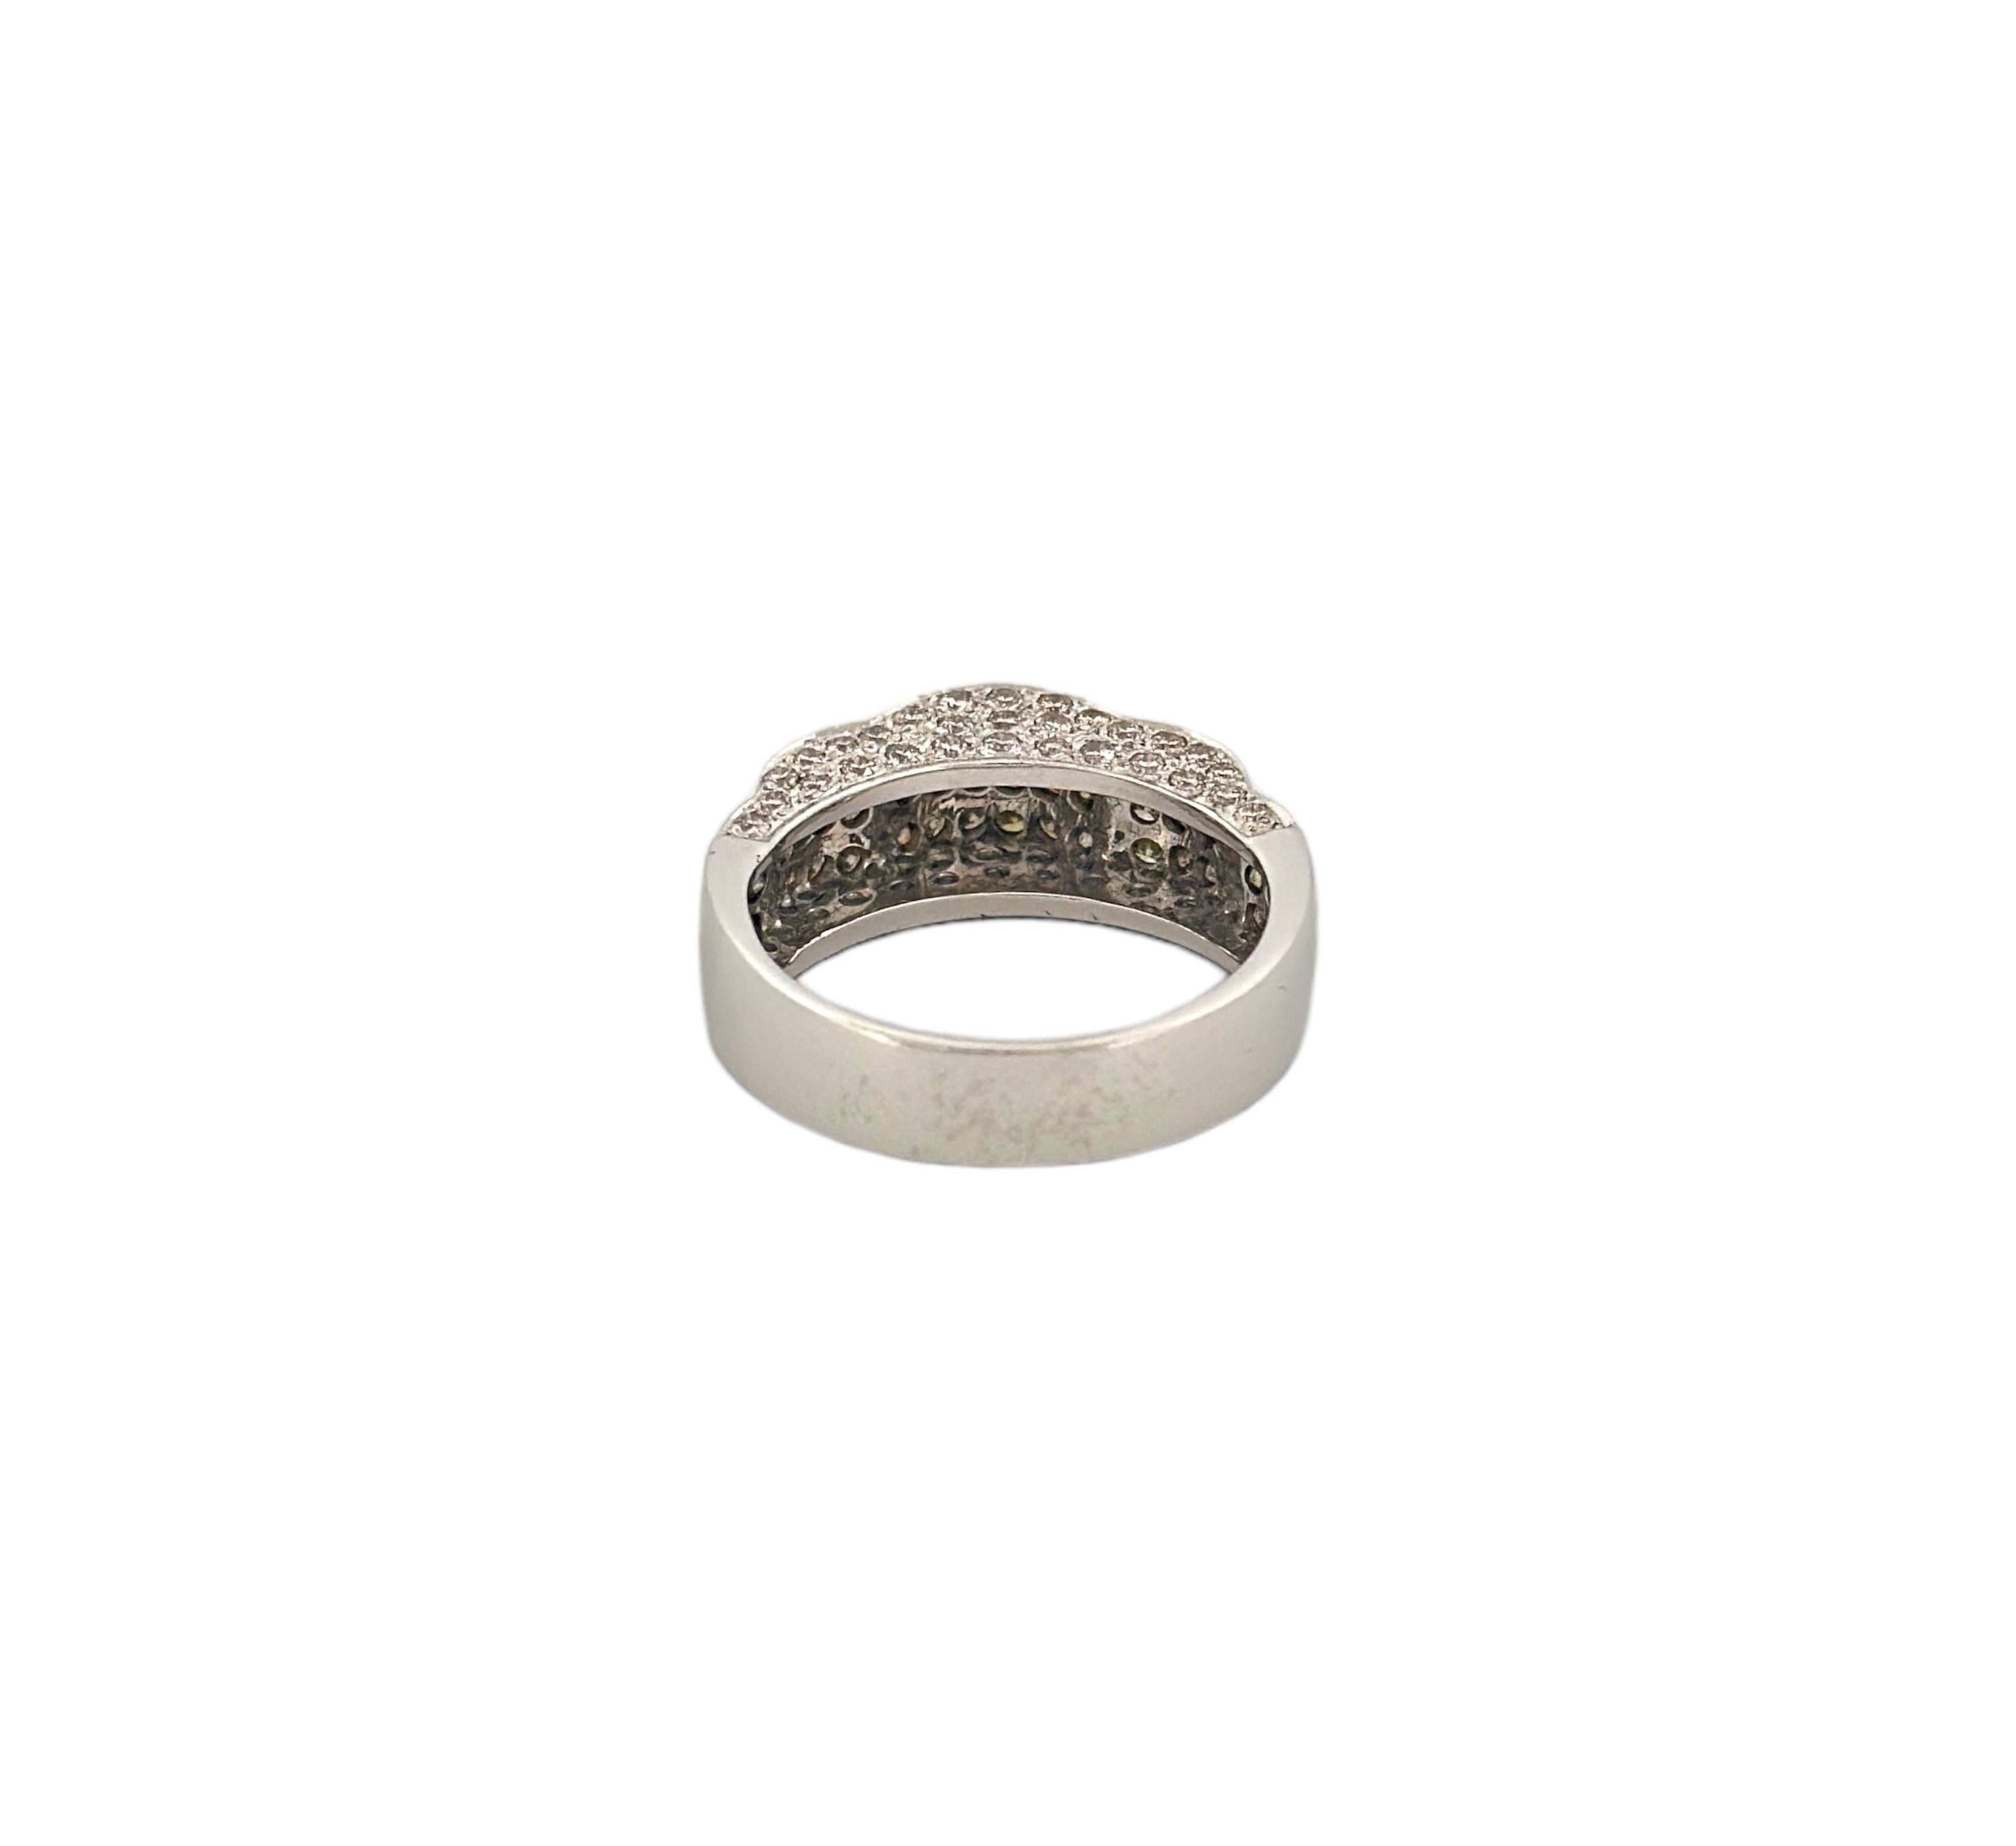 Round Cut Yellow & White Unique Design Diamond Ring For Sale